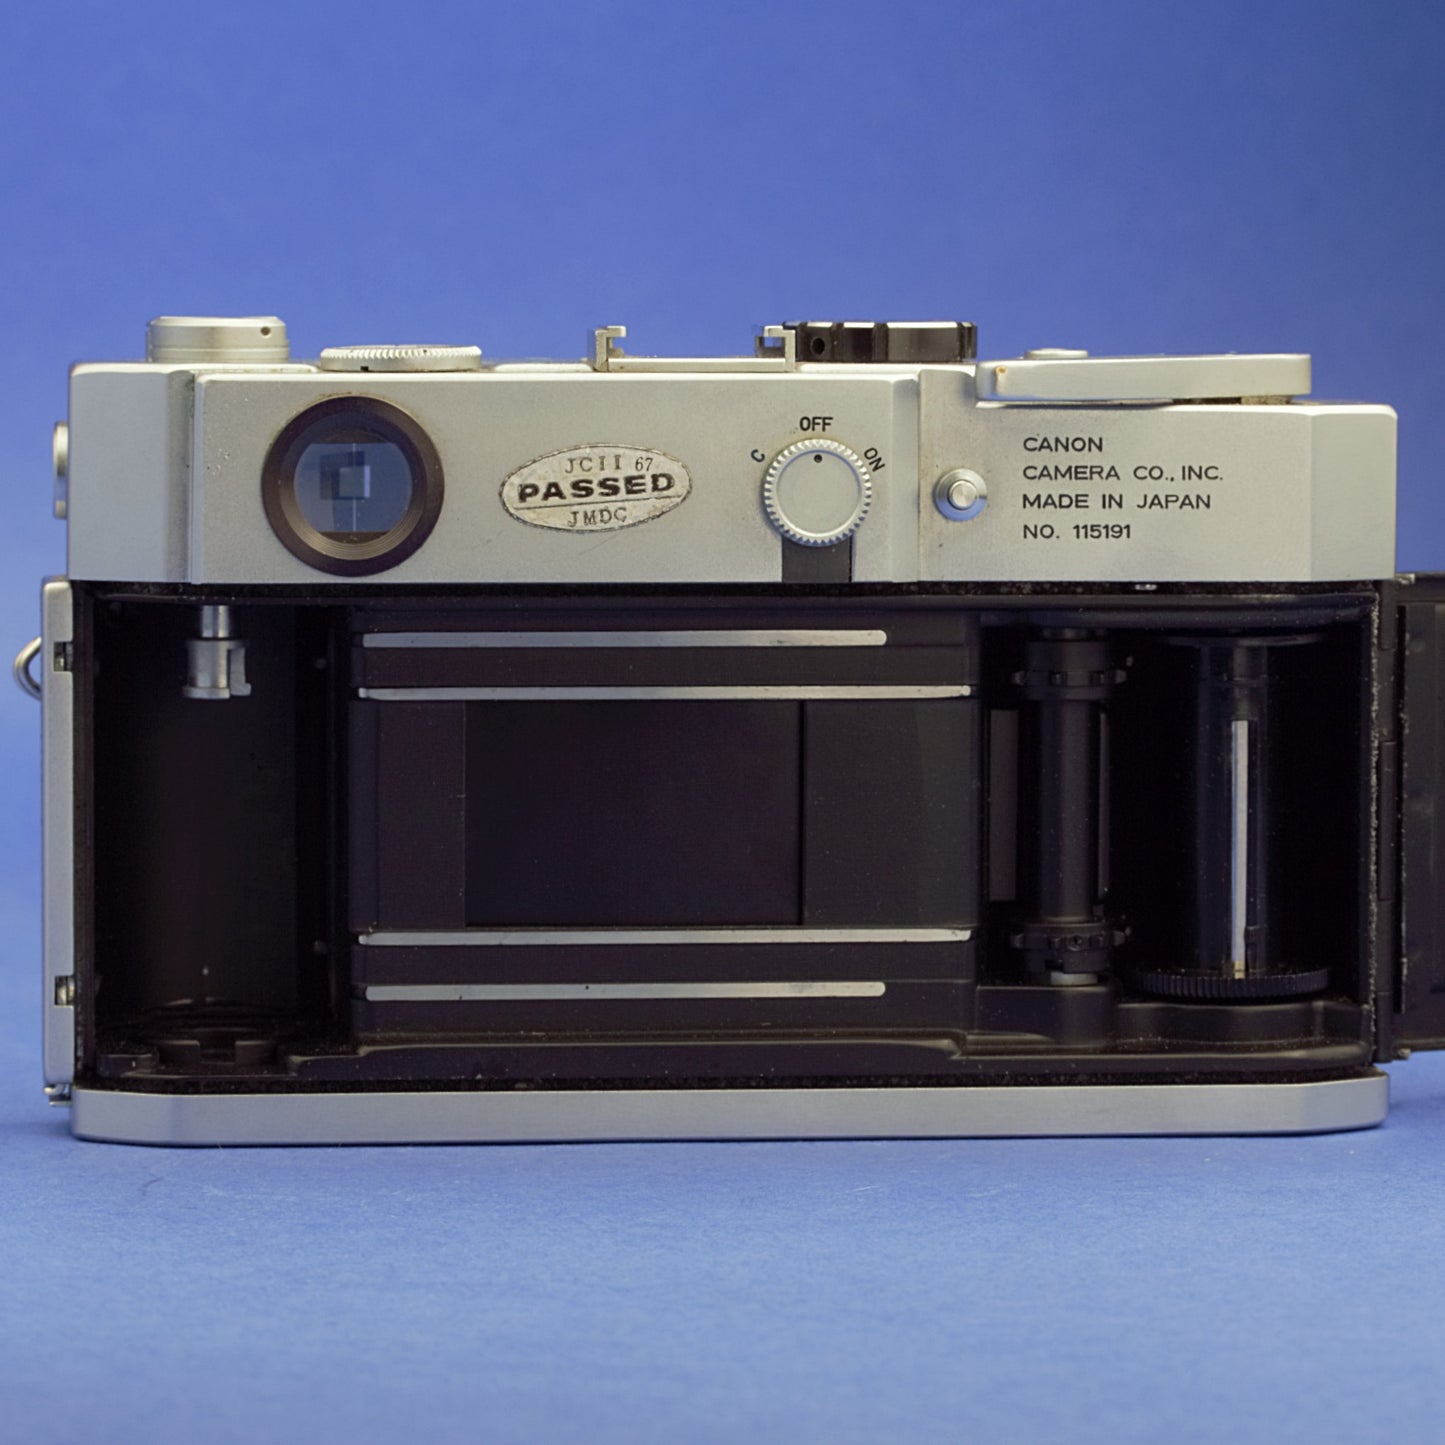 Canon 7s Film Camera Body Beautiful Condition